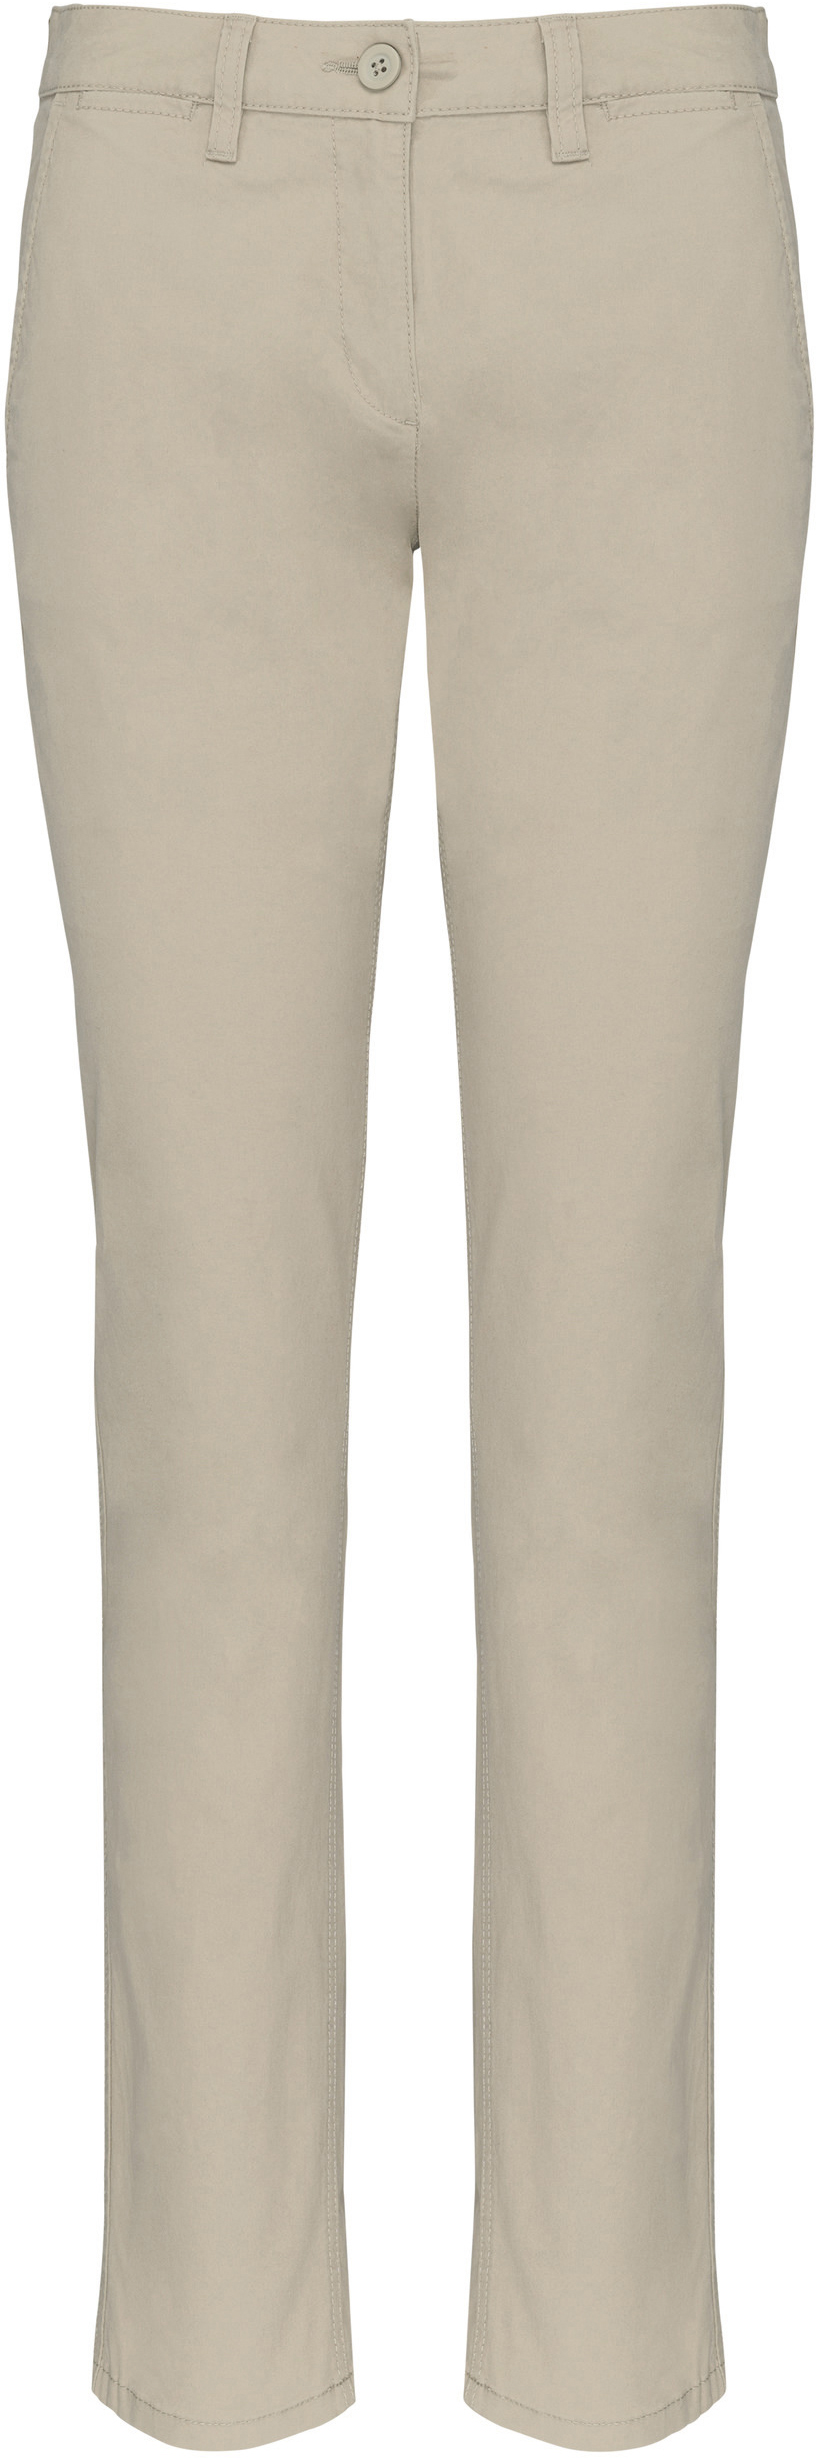 Dámské kalhoty CHINO K741 Barva: naturální, Velikost: 34